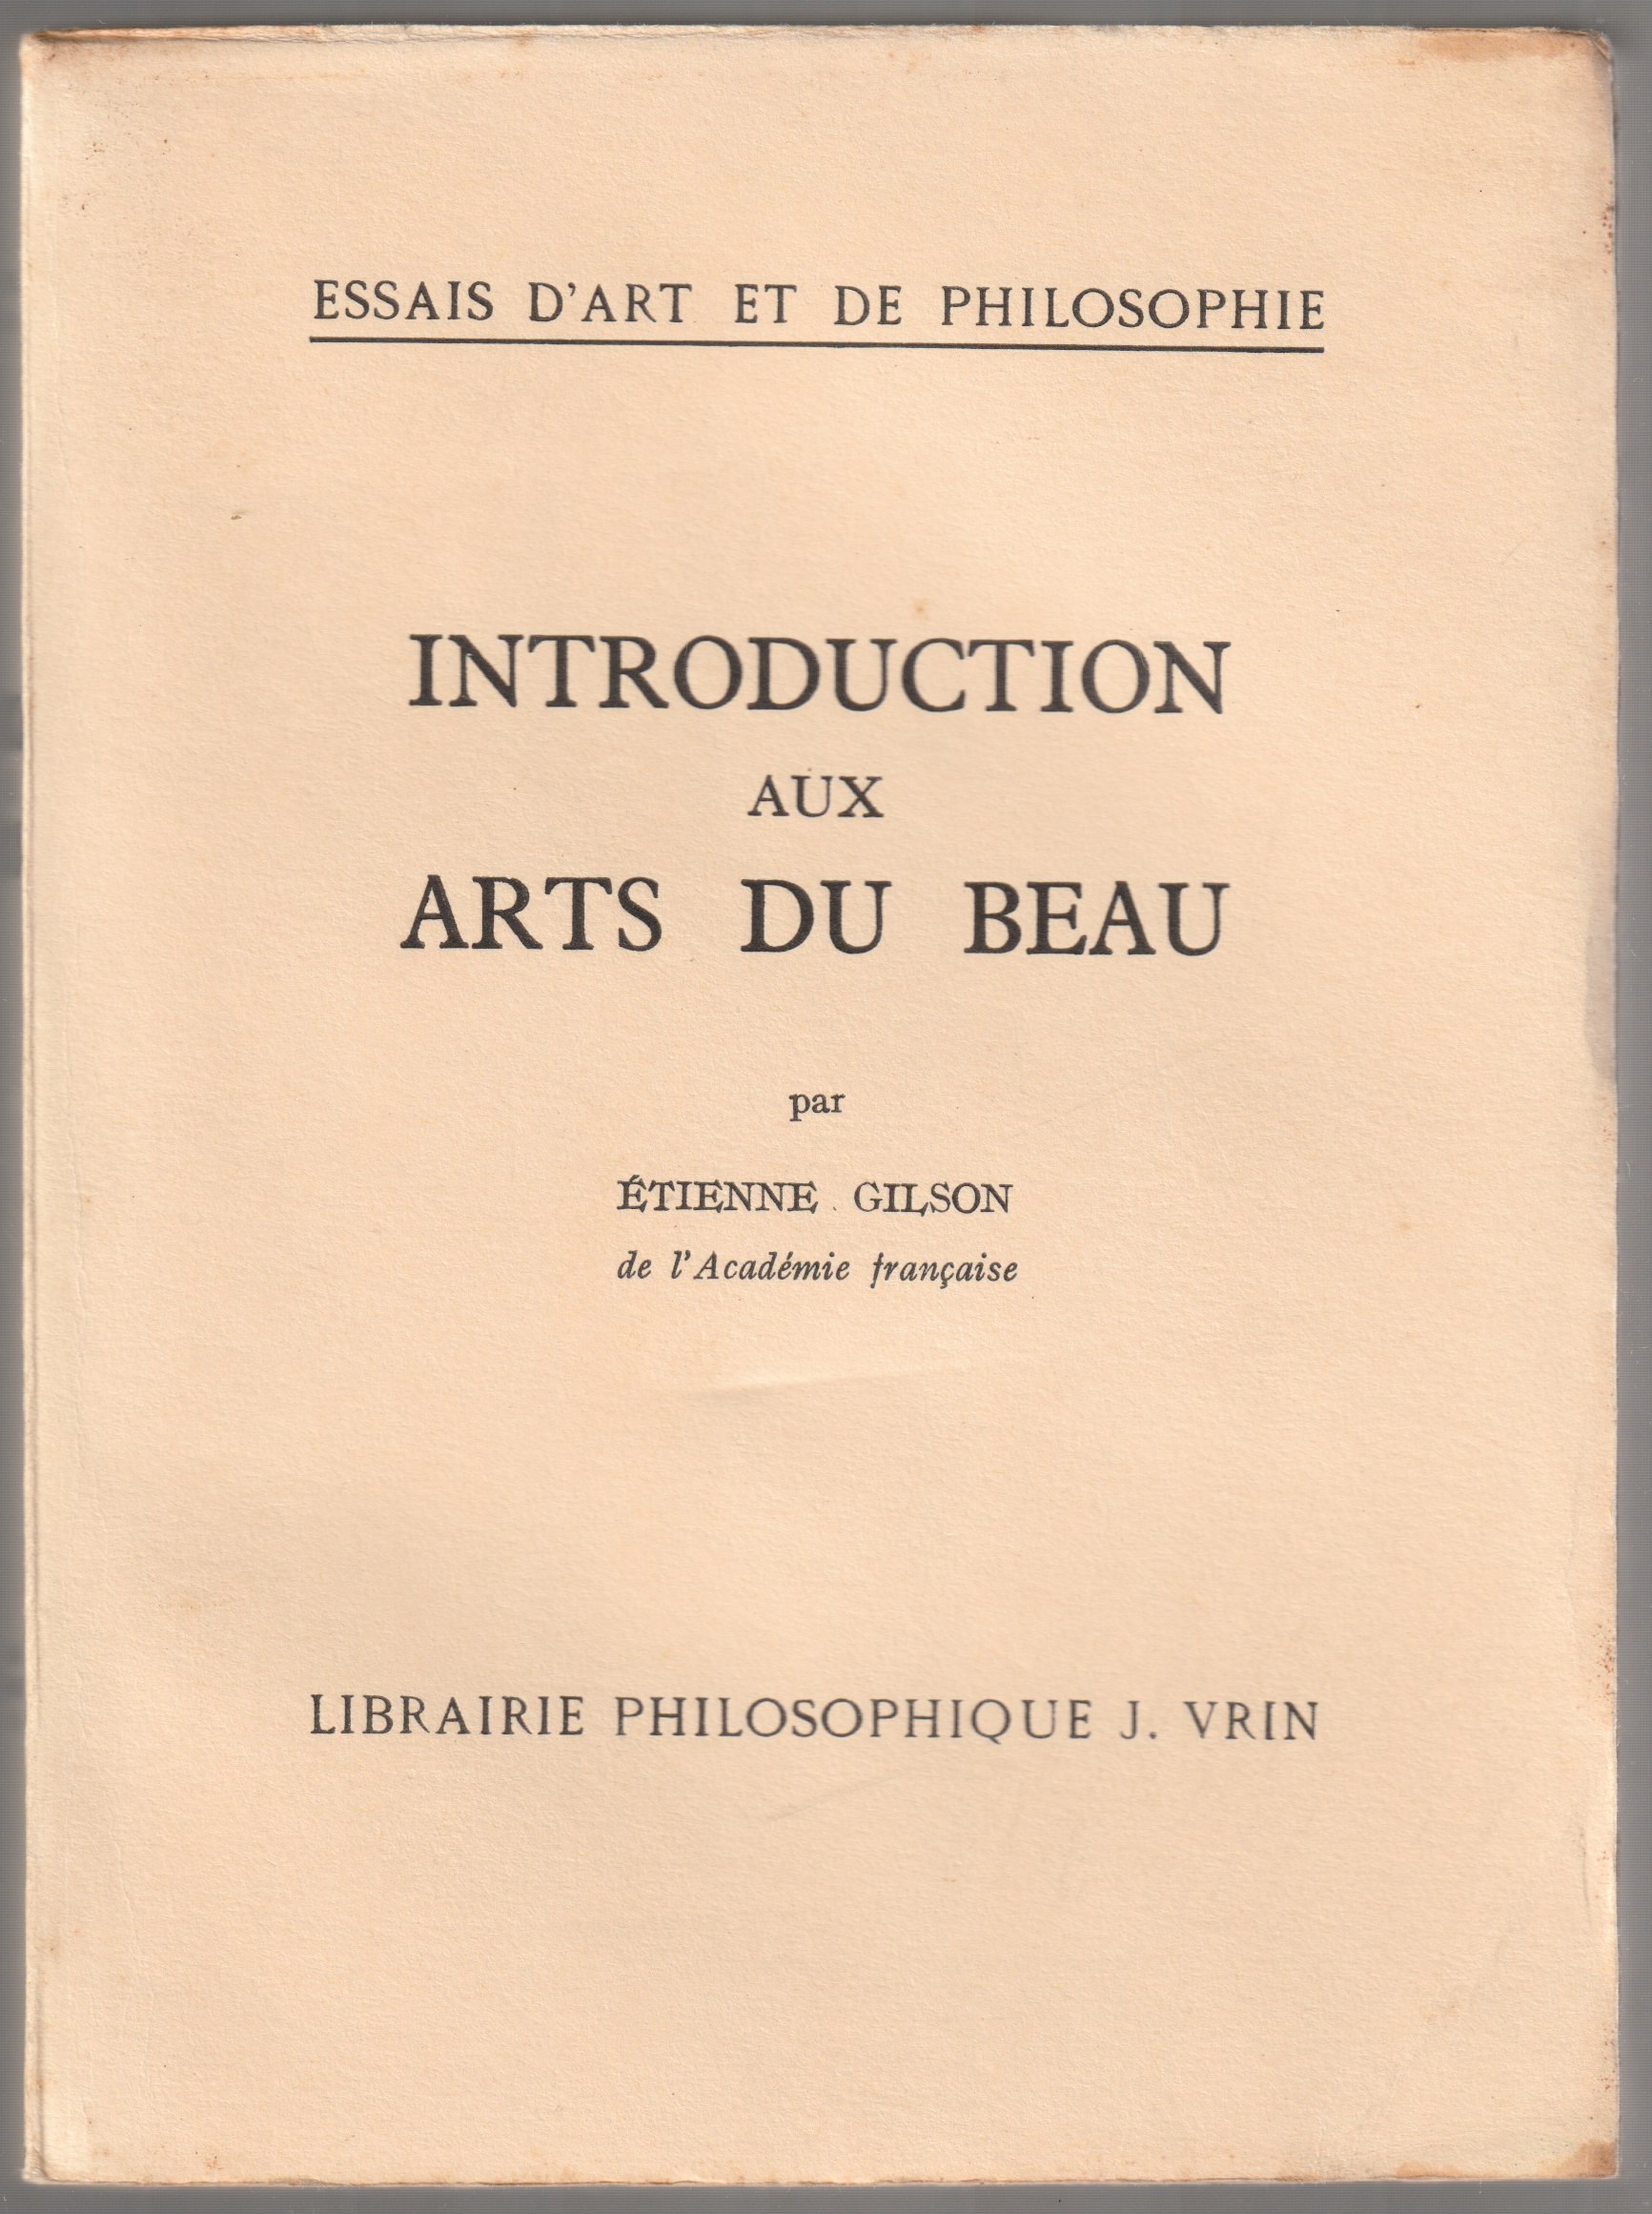 Introduction aux arts du beau.